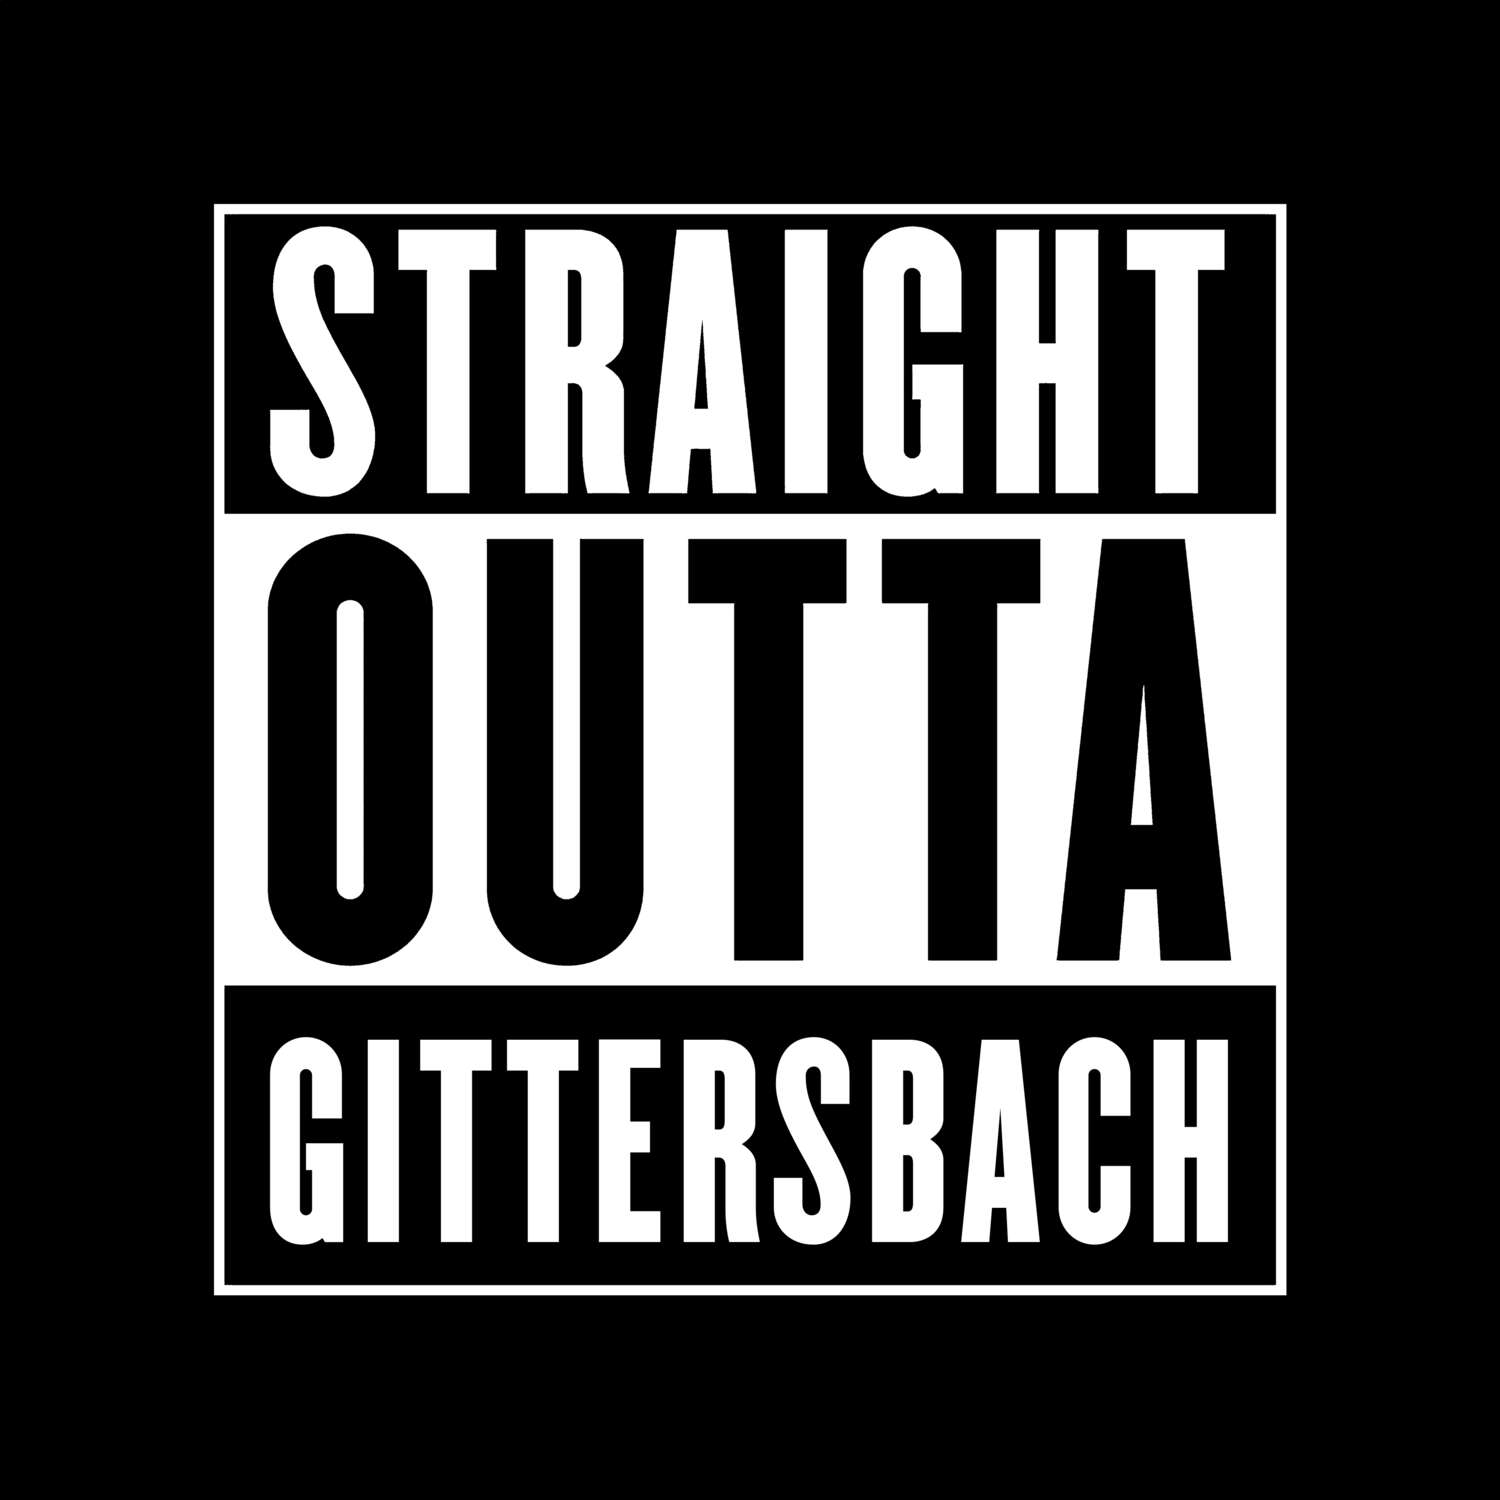 Gittersbach T-Shirt »Straight Outta«